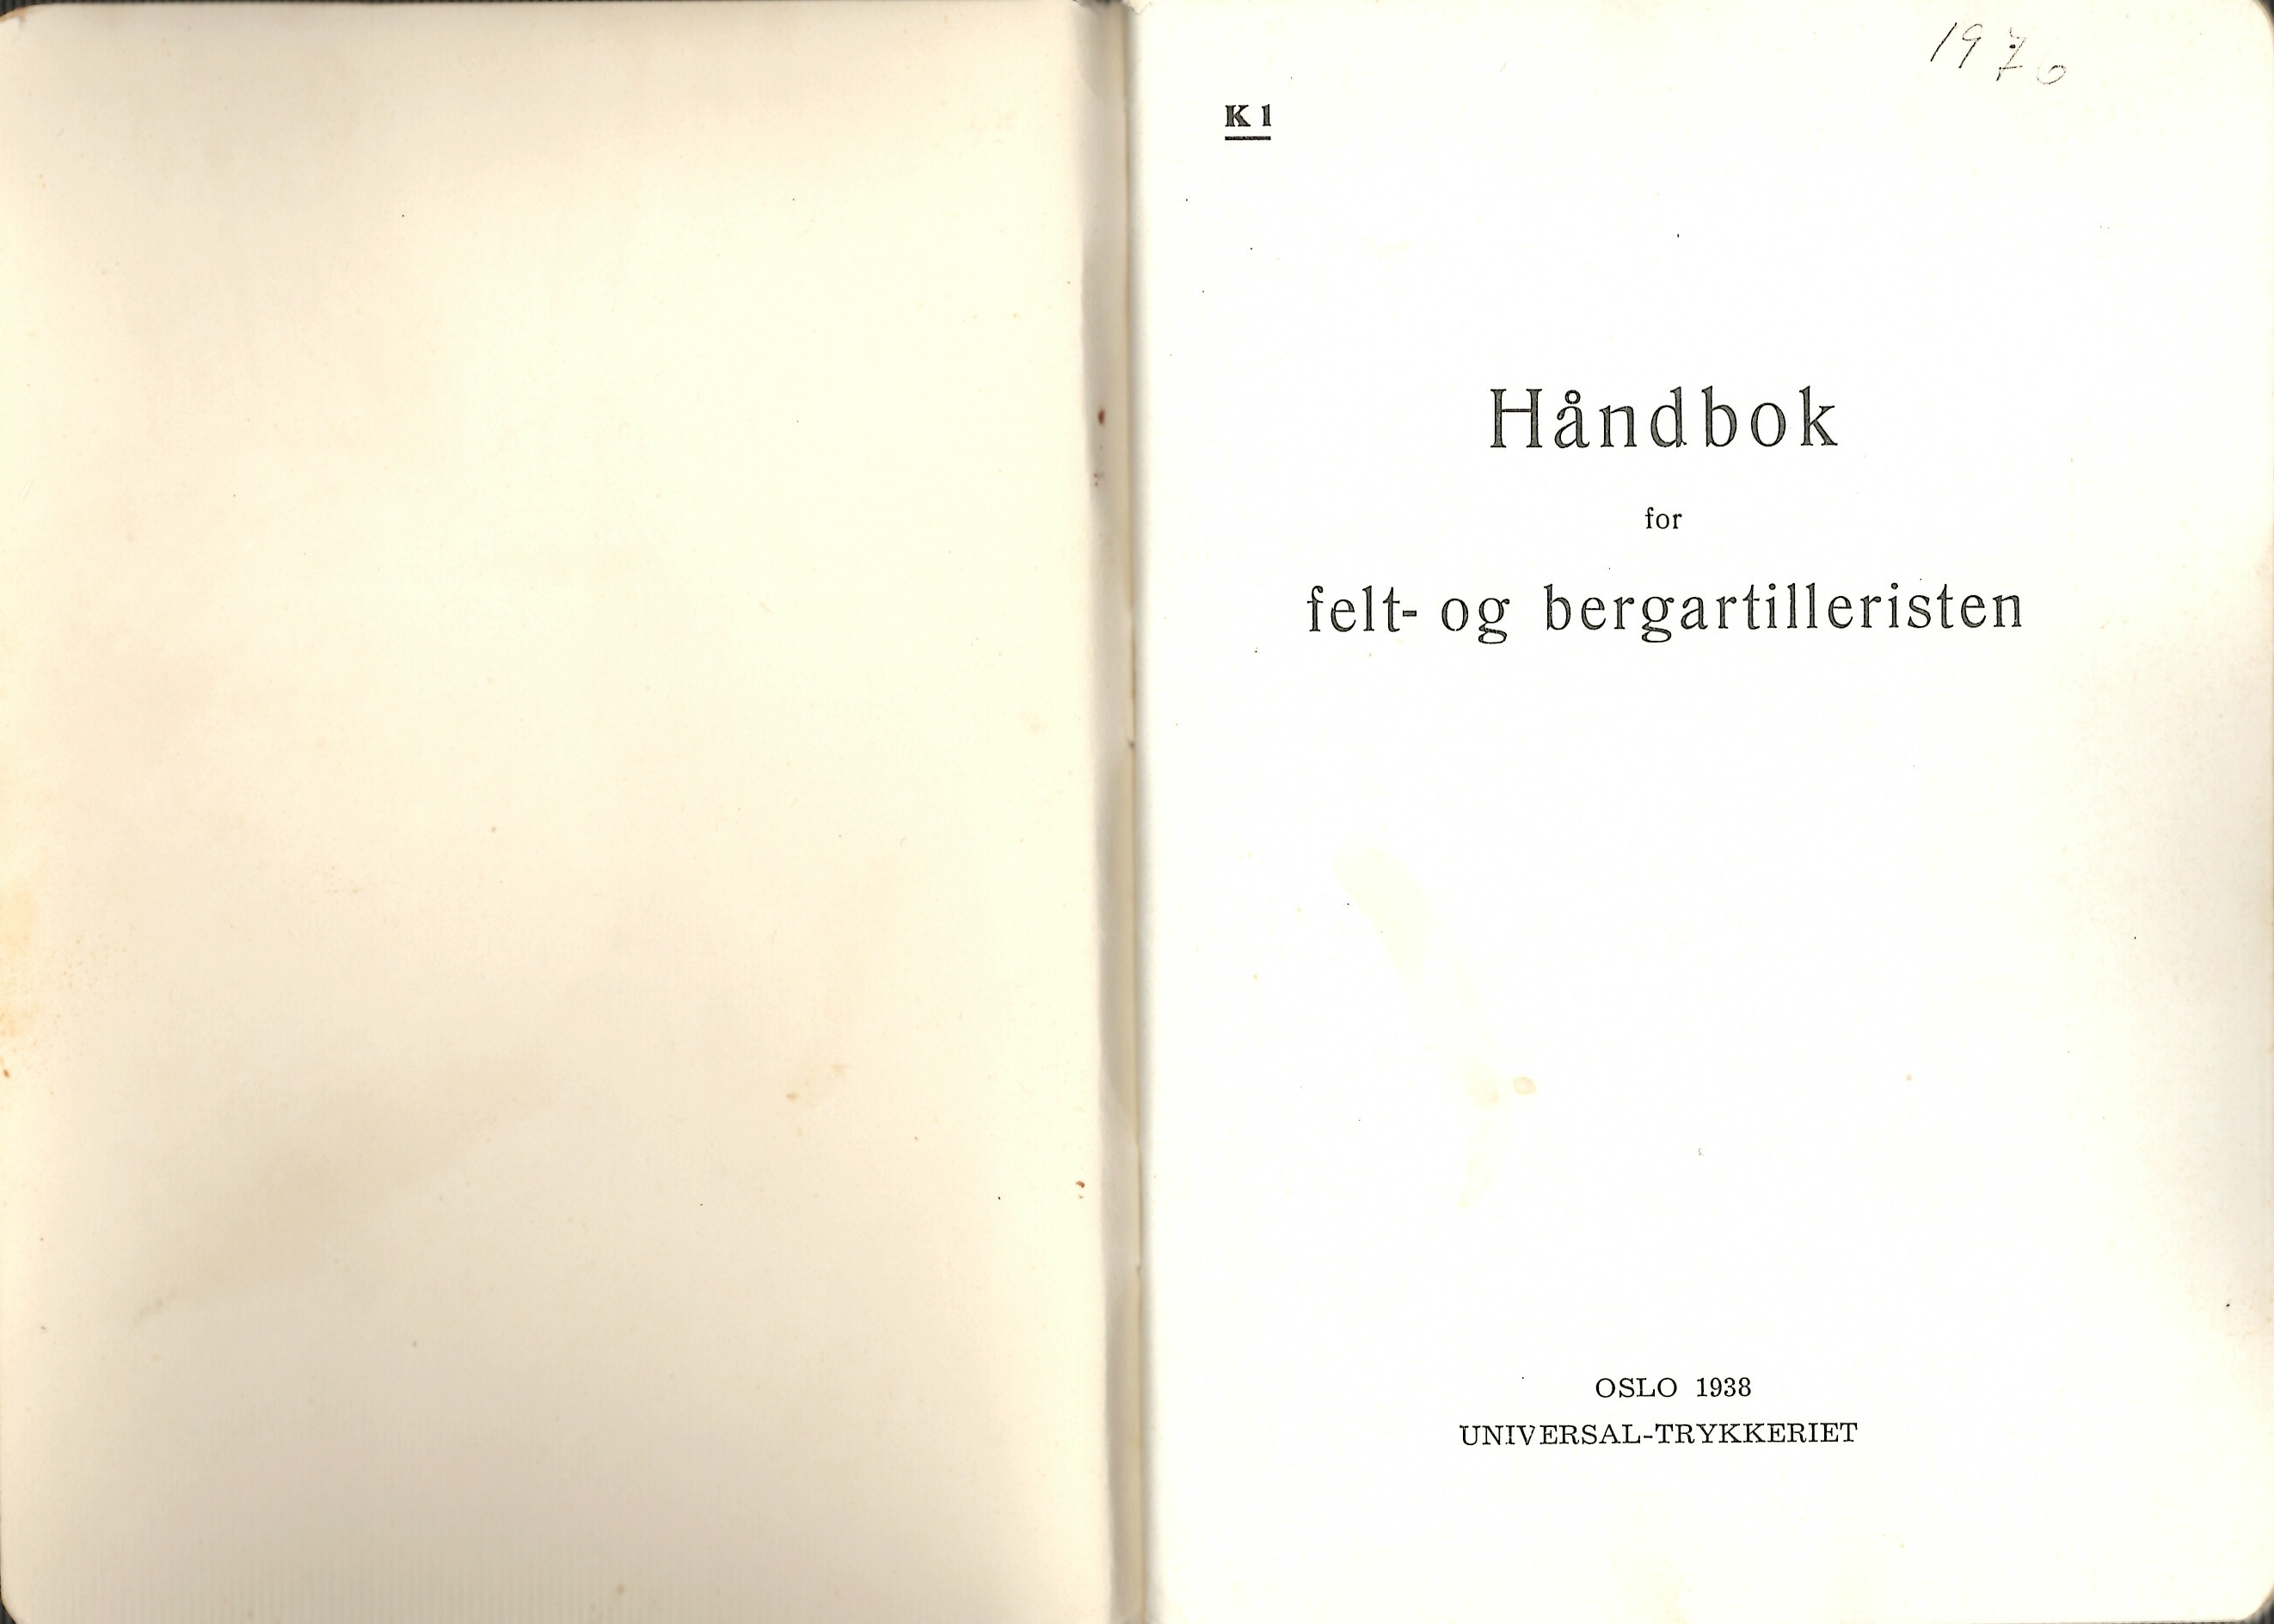 ./doc/reglement/K1/K1-Handbok-Felt-og-bergartilleristen-1938-2.jpg